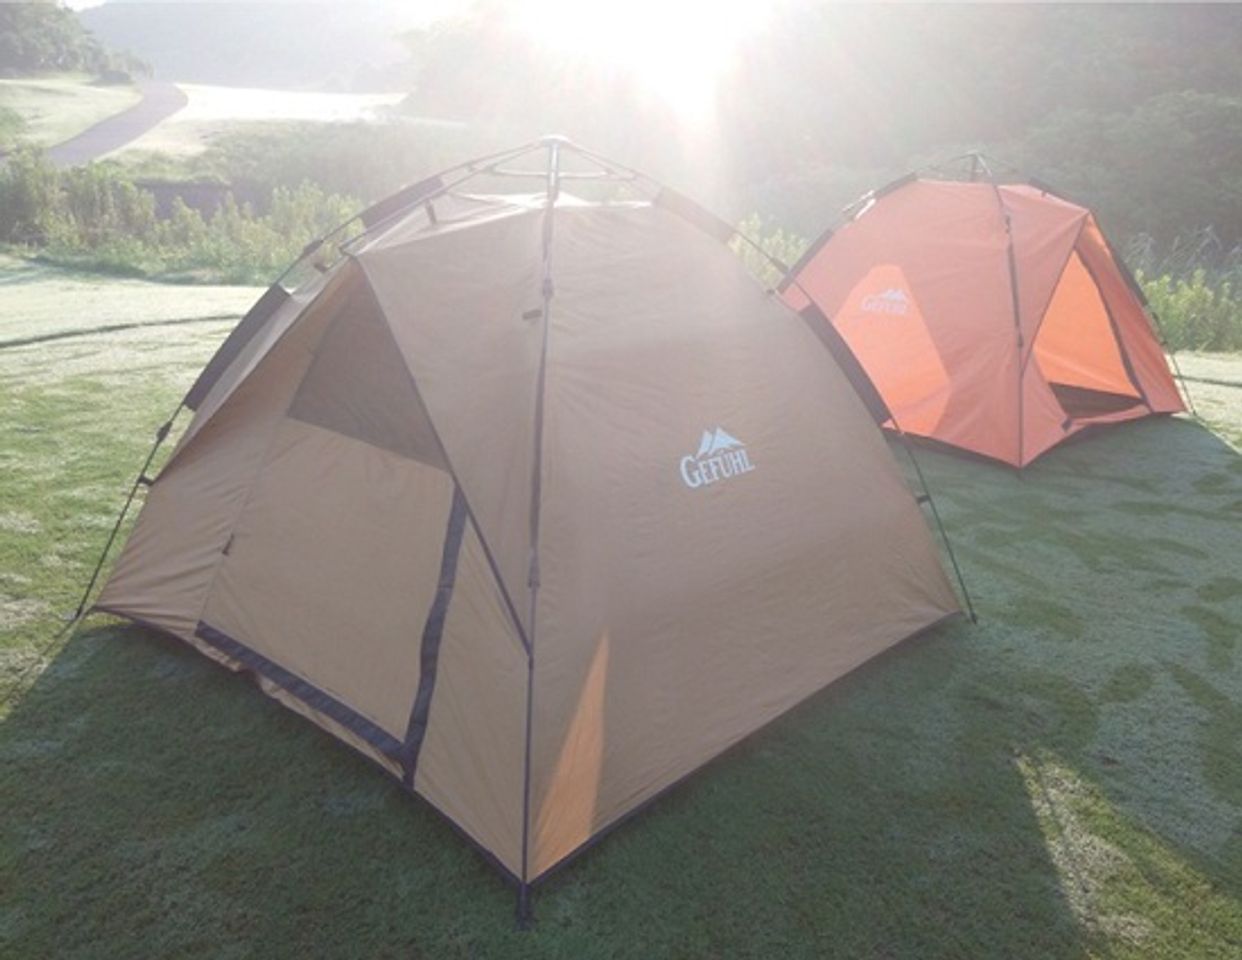 Lều cắm trại 4 người Gefuhl màu nâu